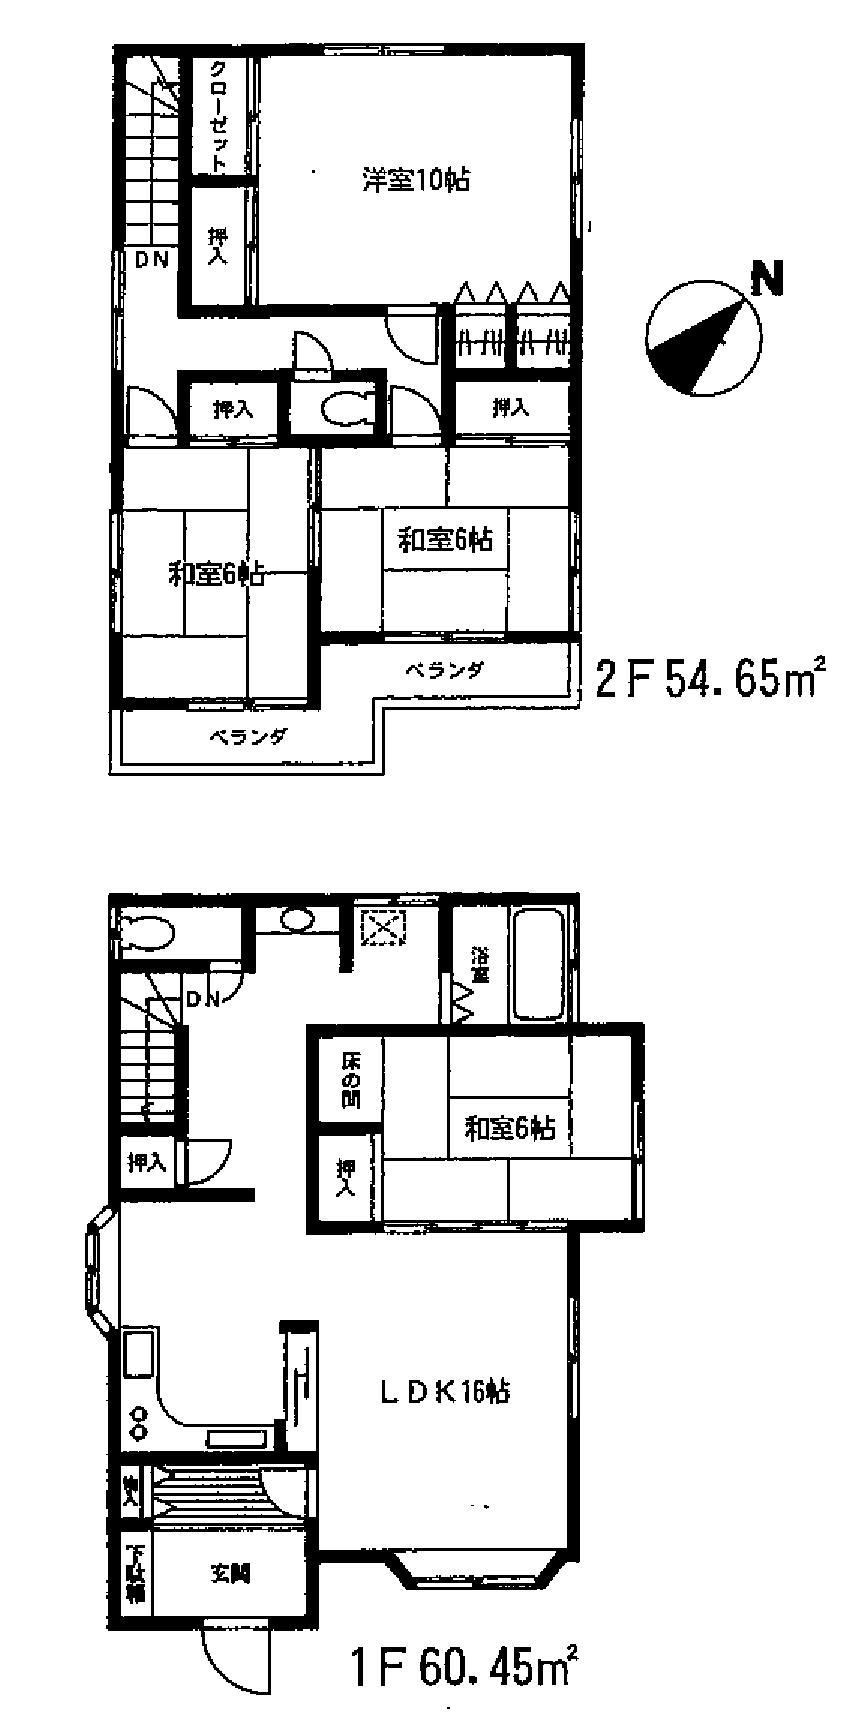 Floor plan. 14.5 million yen, 4LDK, Land area 135.47 sq m , Building area 115.1 sq m